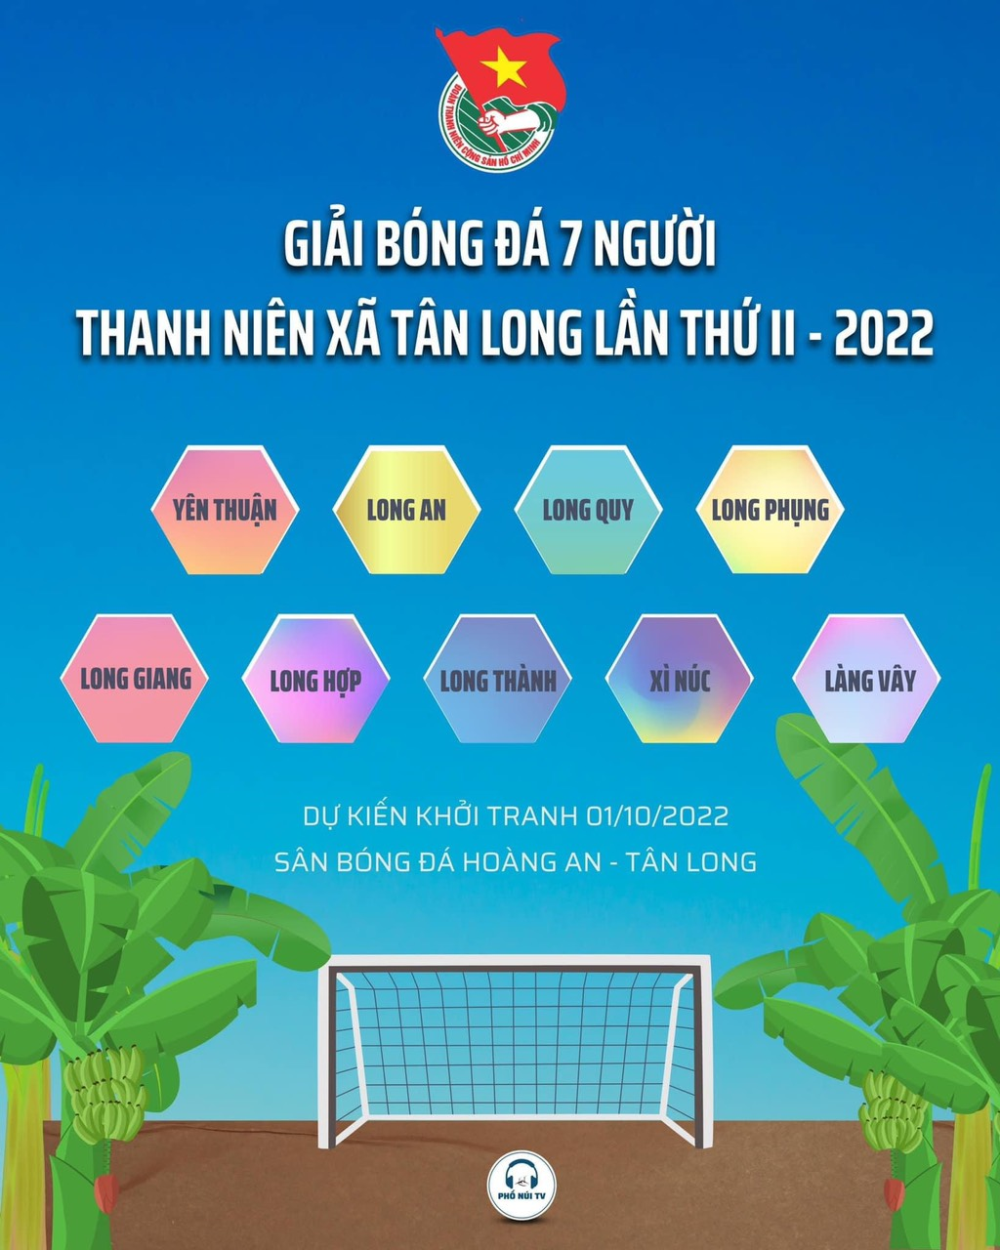 Xã Tân Long tổ chức khai mạc giải bóng đá Thanh niên lần thứ II năm 2022